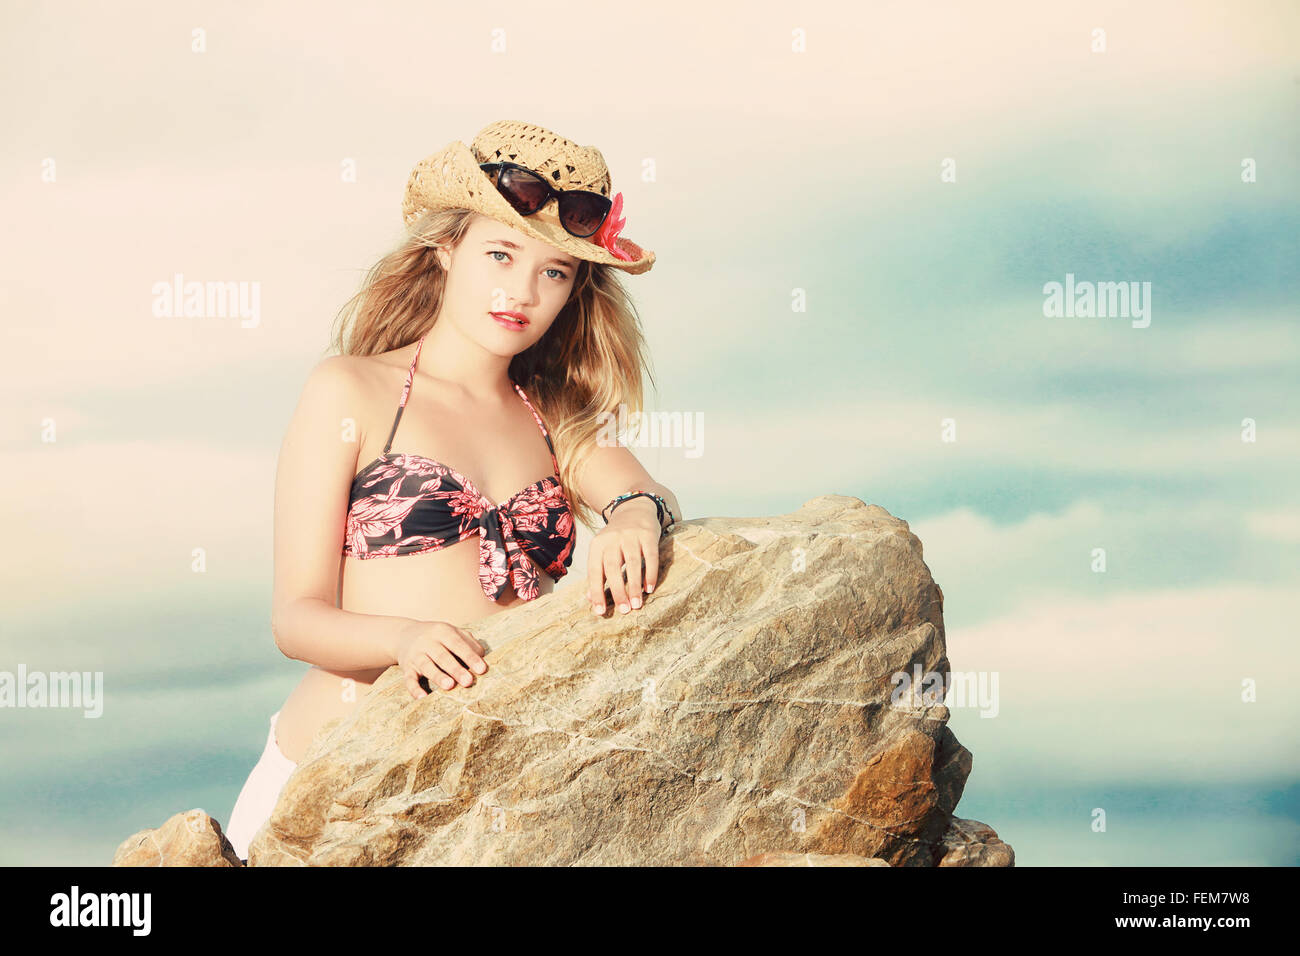 Eine Nahaufnahme Foto einer schönen blonden Dame gekleidet in einem Blumen- oder tropischen Bikini mit Cowboy-Hut und Sonnenbrille sideway gelehnt Stockfoto